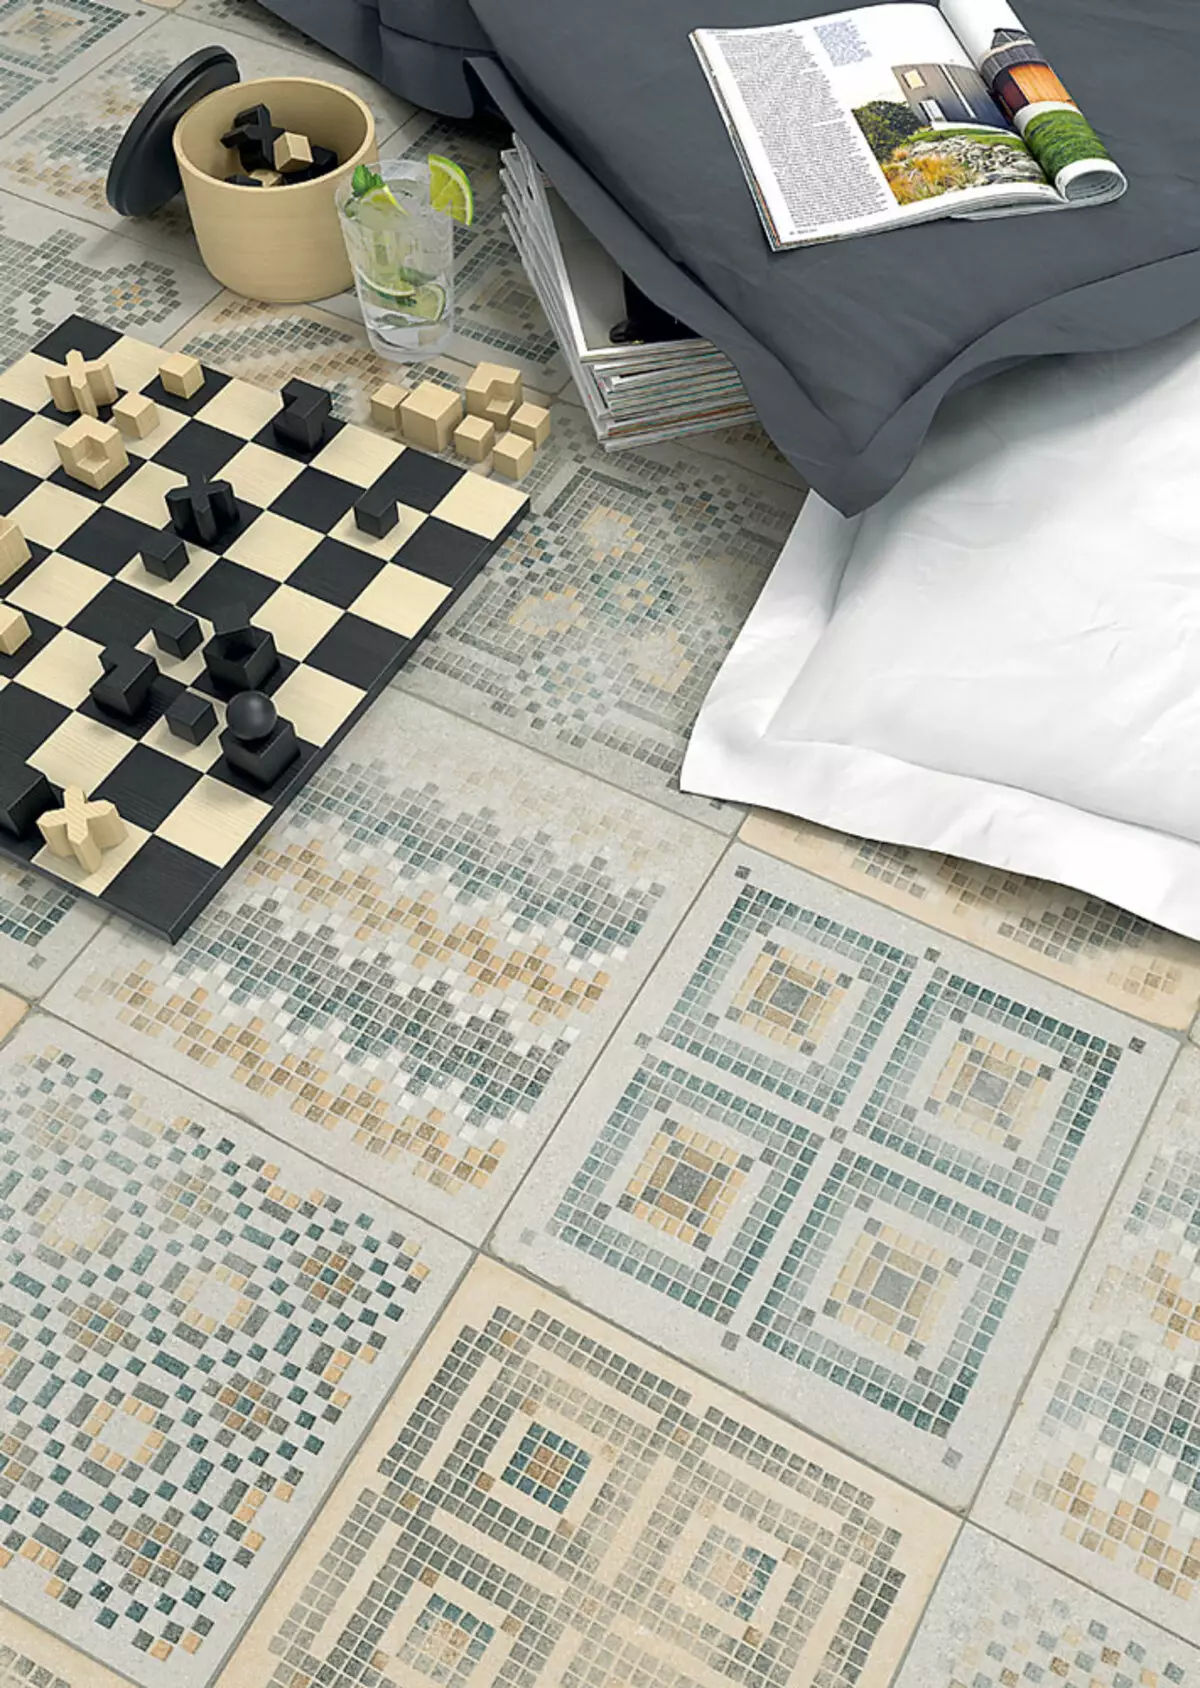 Ceramic tile as decor means